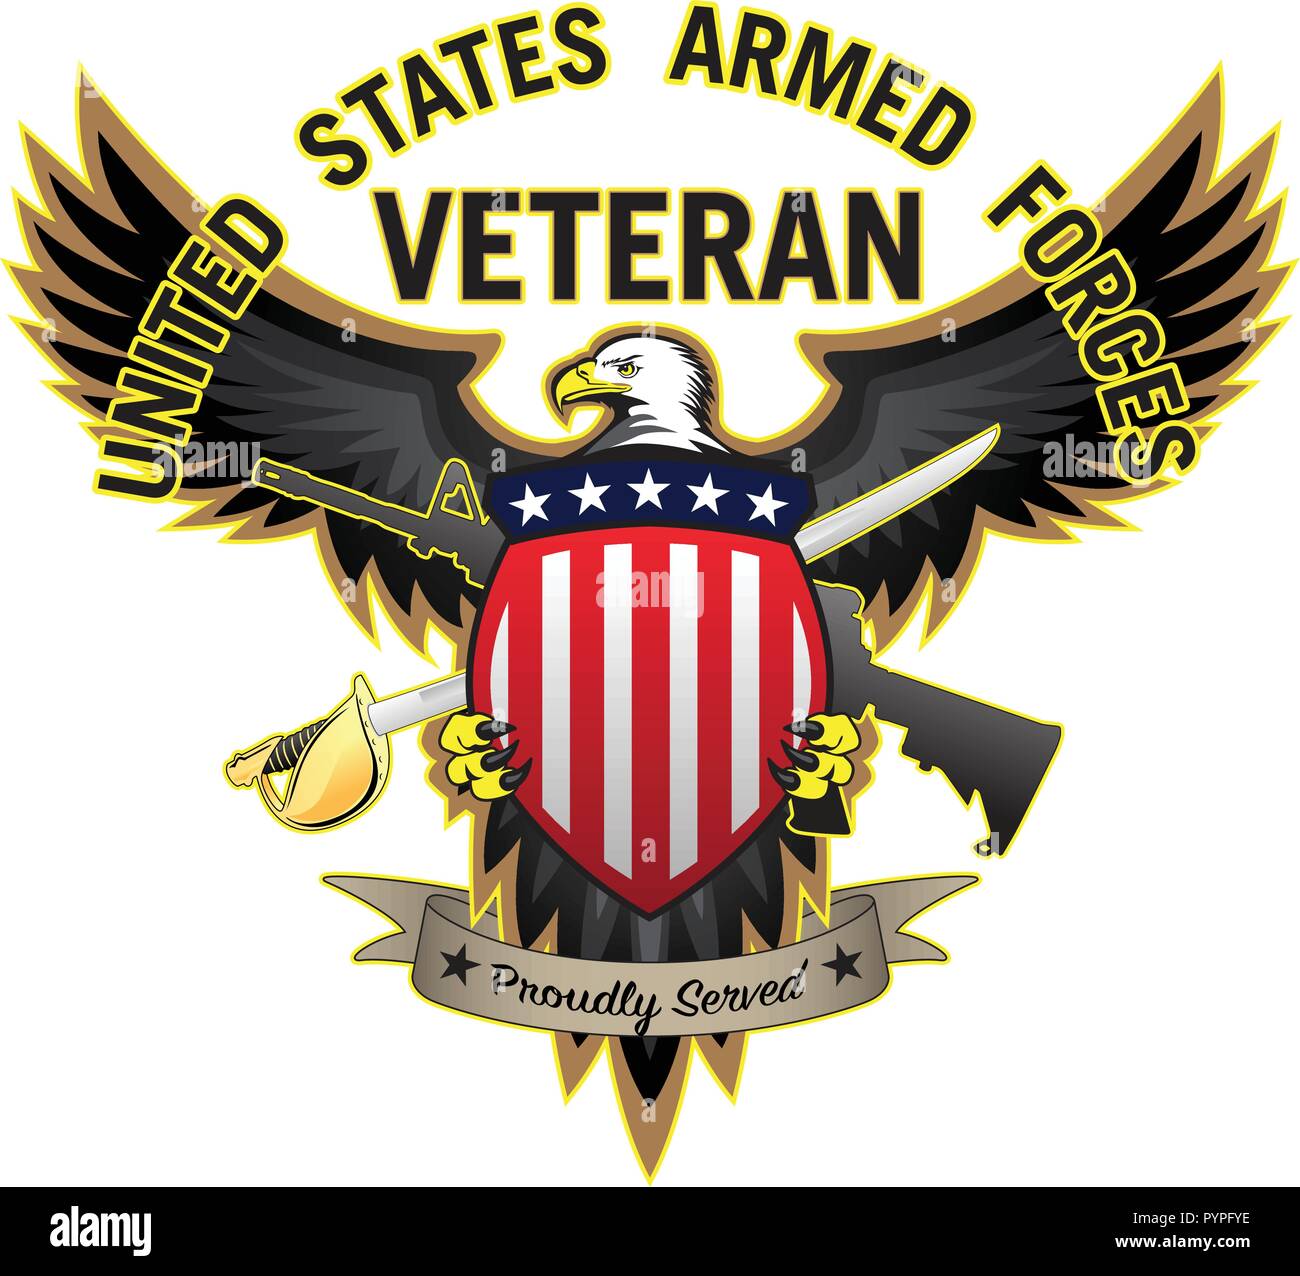 Le forze armate degli Stati Uniti hanno veterano orgogliosamente servito aquila calva illustrazione vettoriale Illustrazione Vettoriale